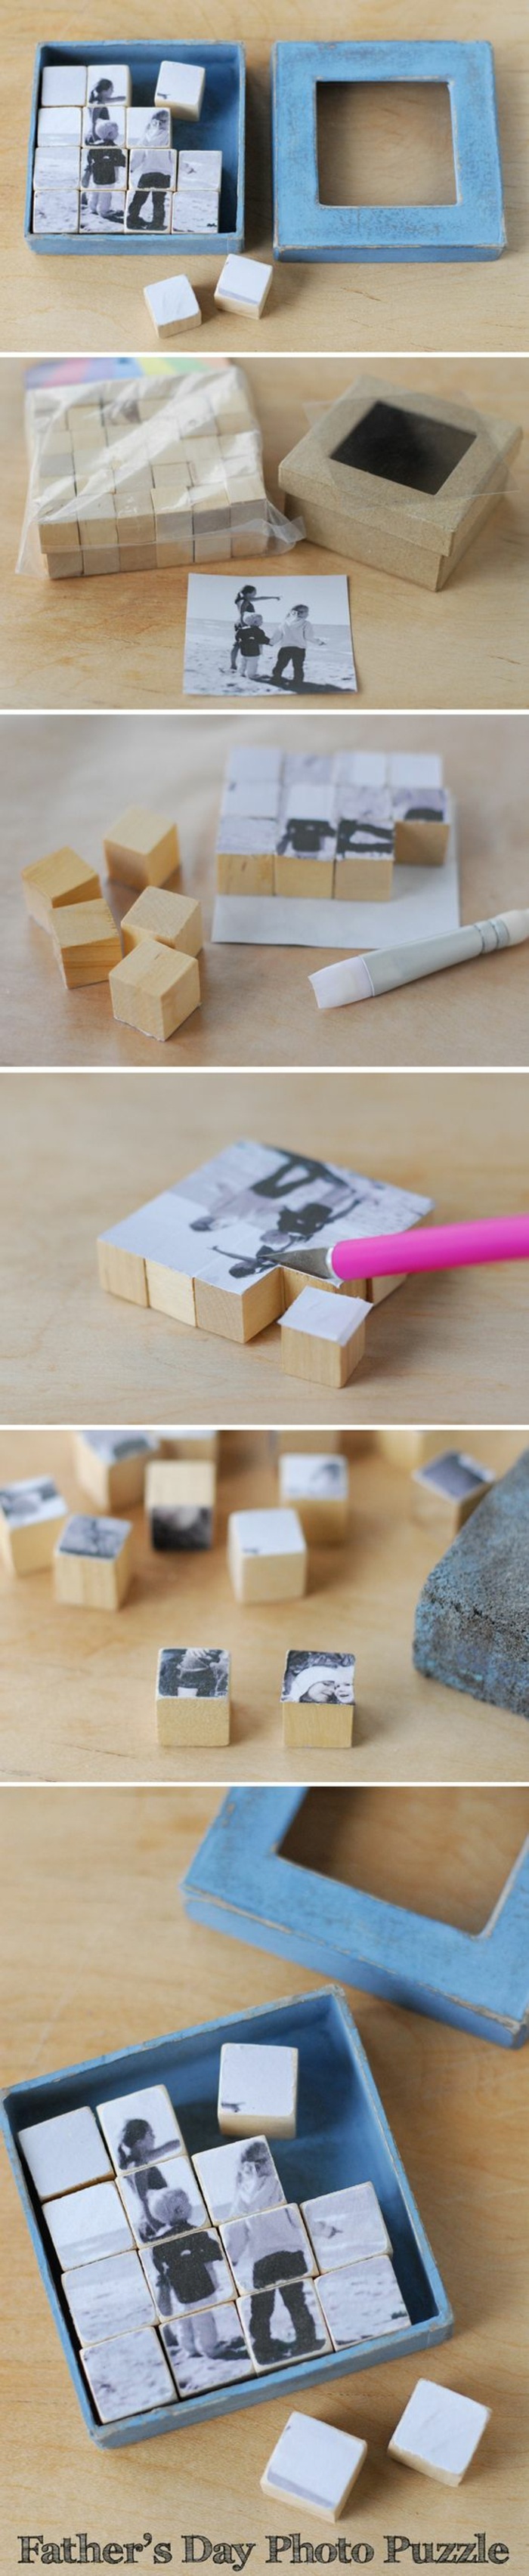 tutoriel boîte avec cubes photo en bois, bricolage fête des pères facile, exemple comment faire un puzzle avec photo